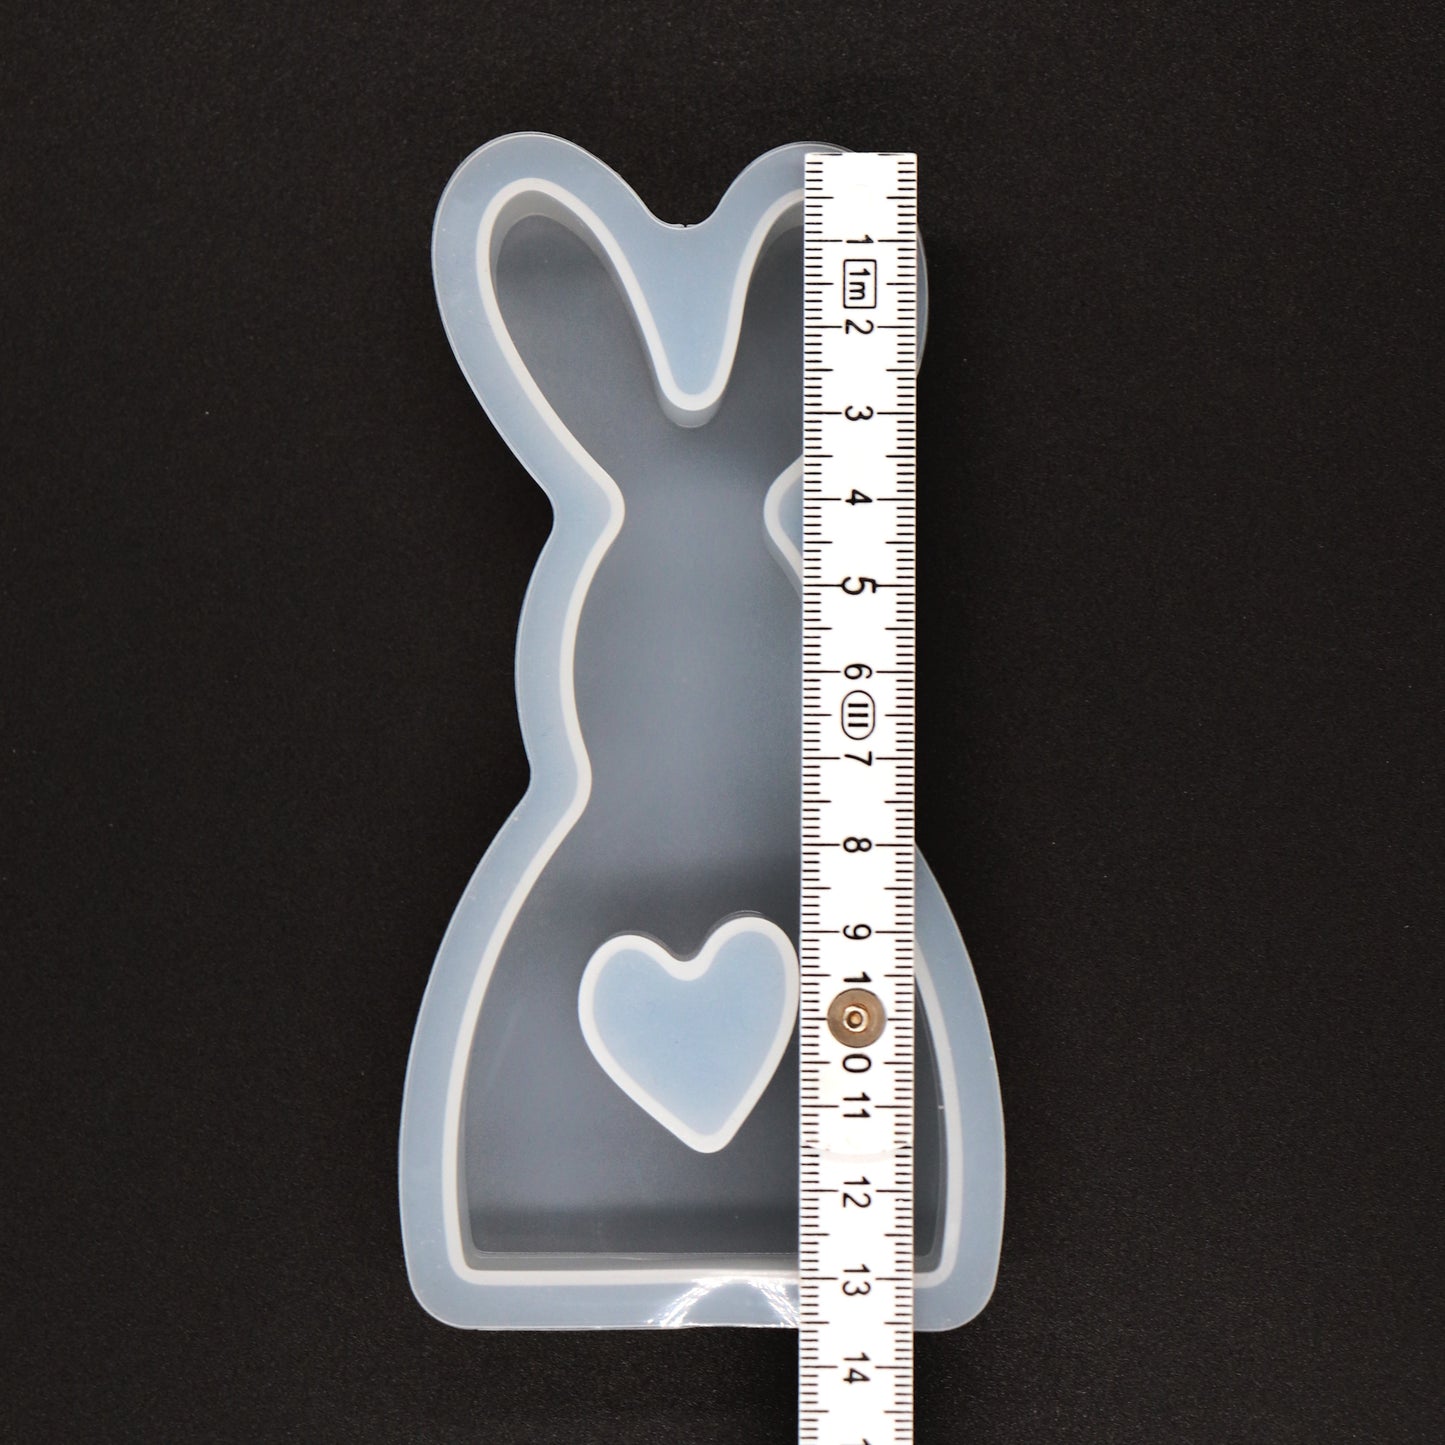 Silikonform Hase mit Herz Gießform Ostern Kaninchen Deko für Raysin ca. 12,5 cm